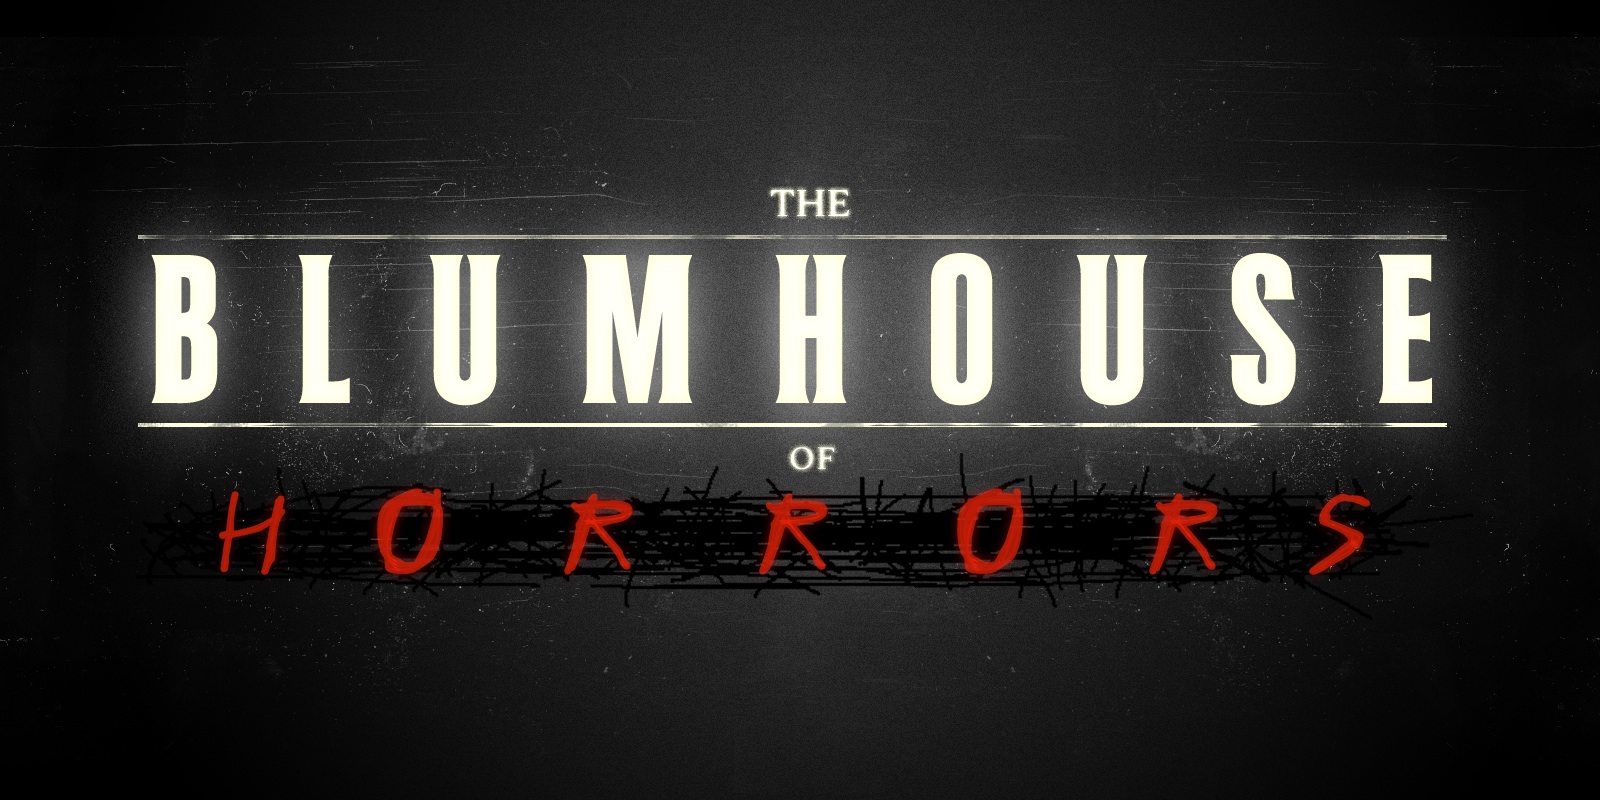 Horror company. Blumhouse Productions кинокомпании США.